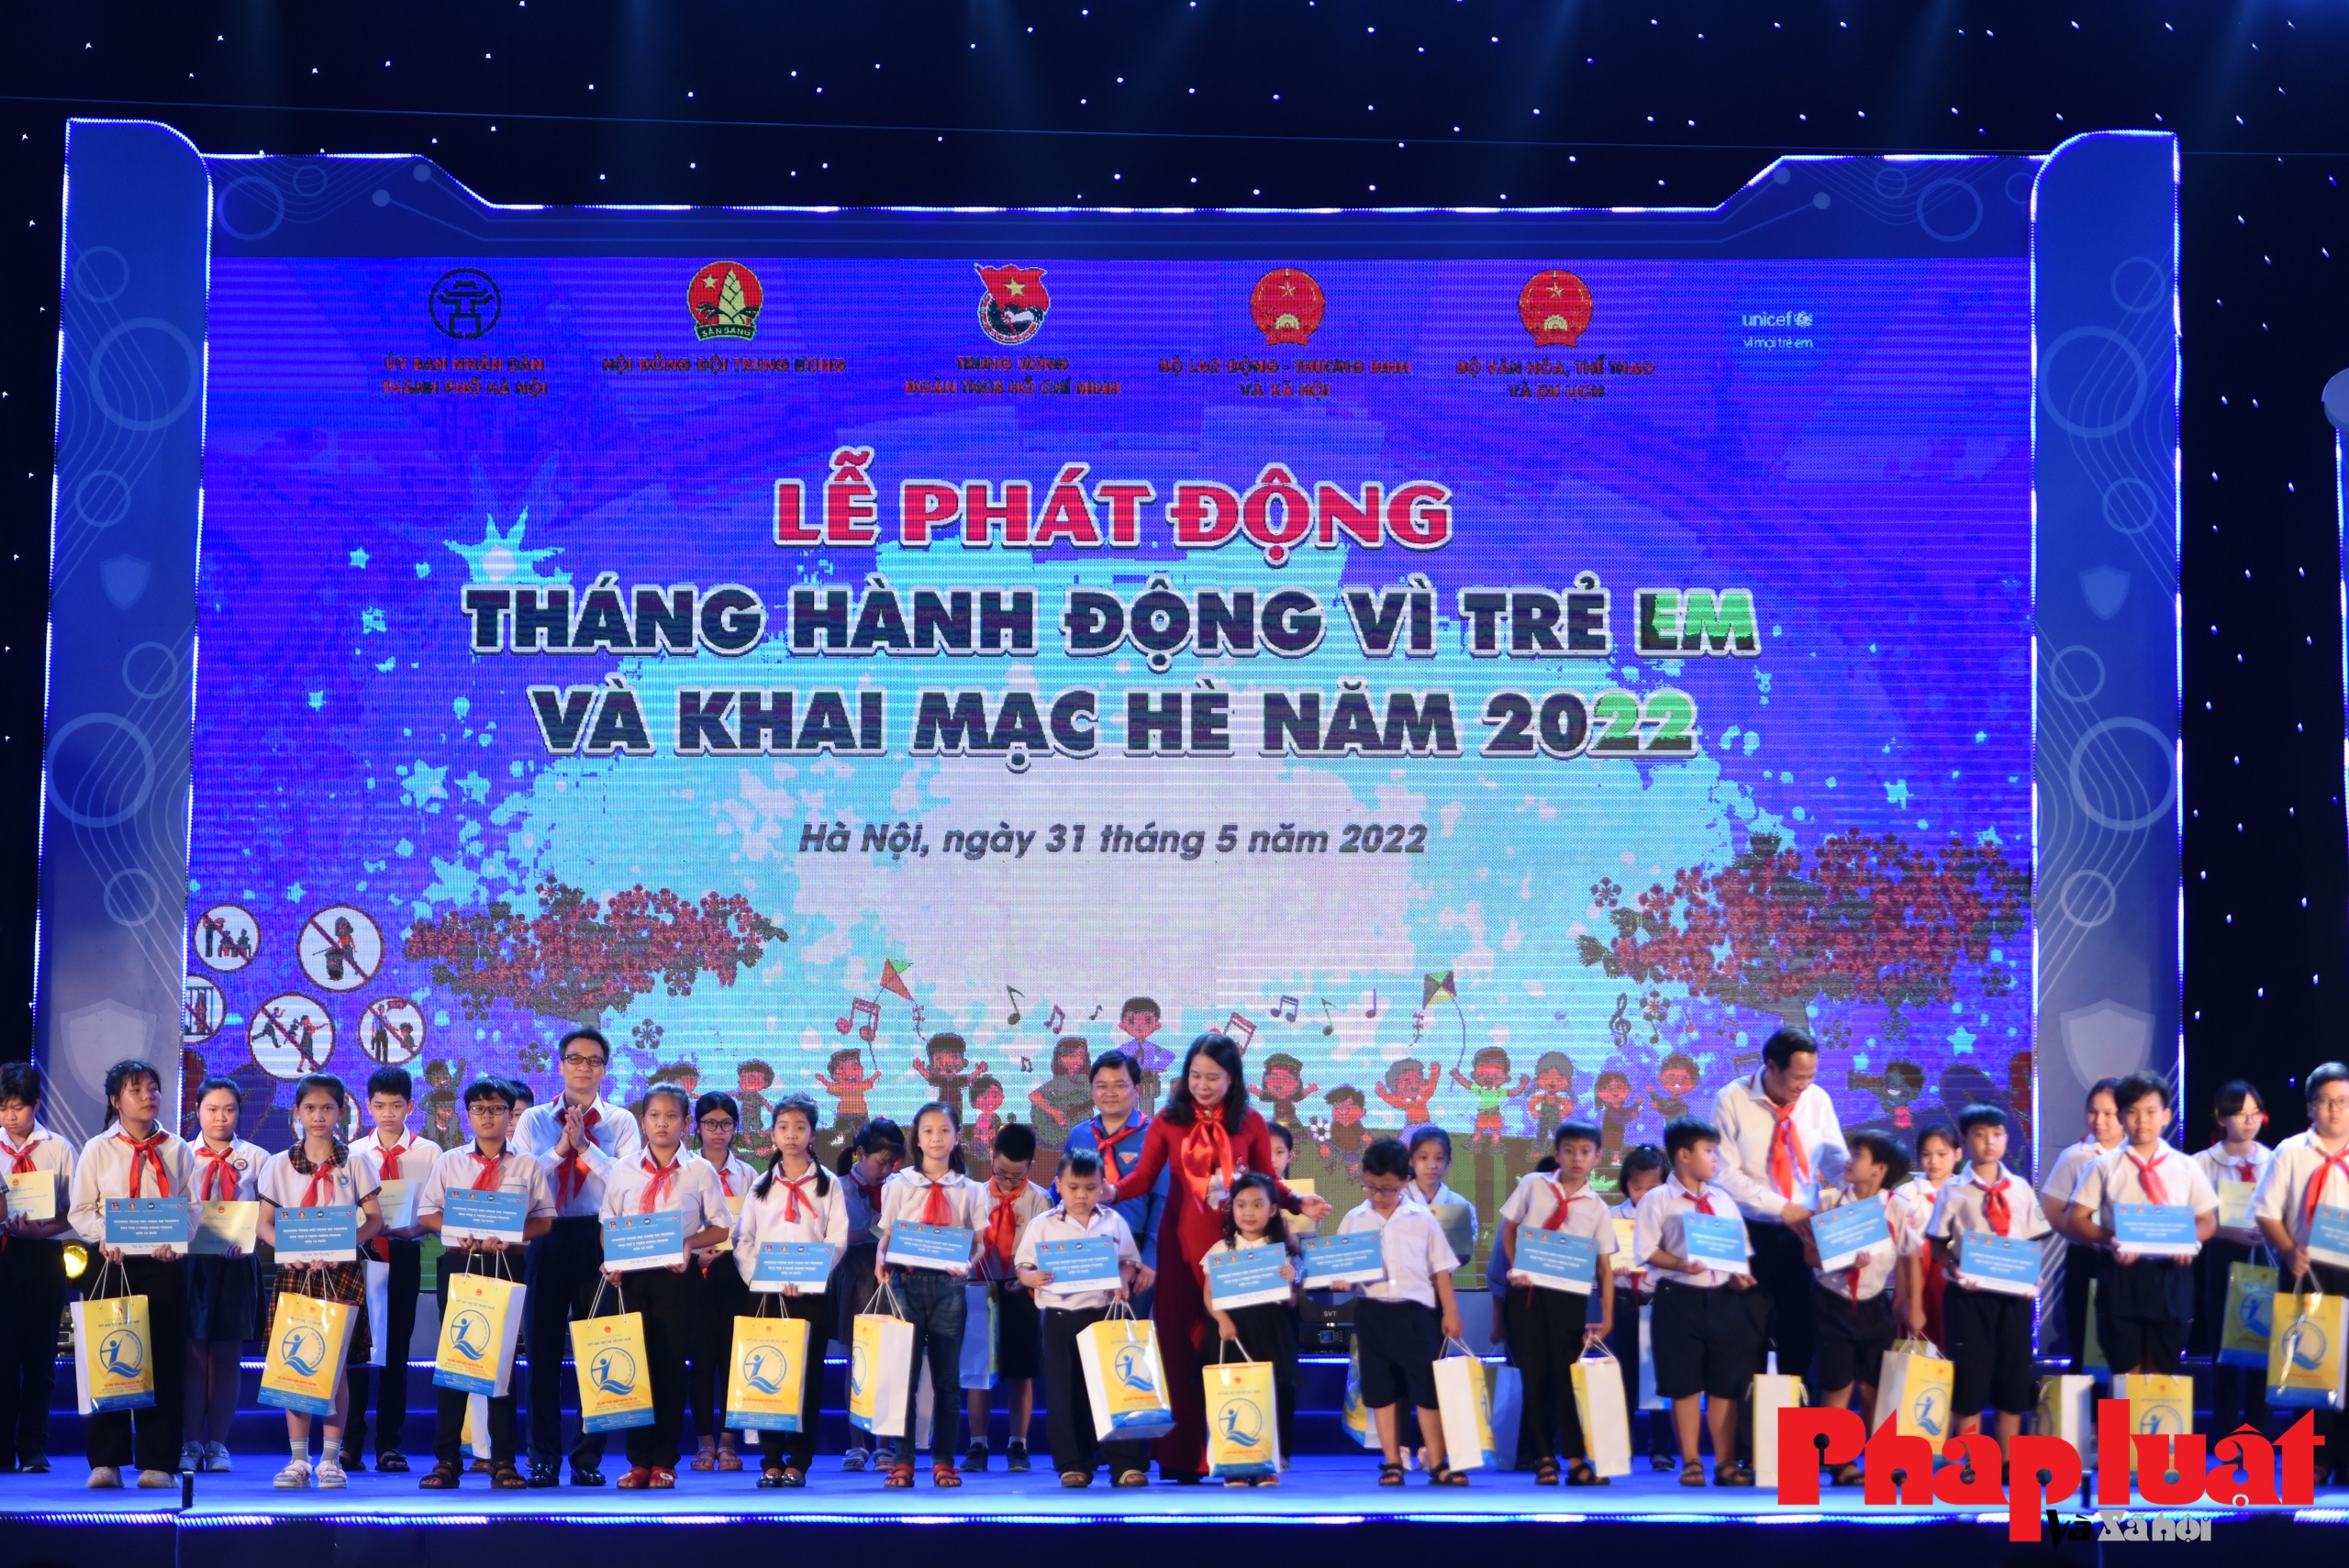 Thủ tướng Phạm Minh Chính và thông điệp hành động bằng tấm lòng, trách nhiệm với trẻ em